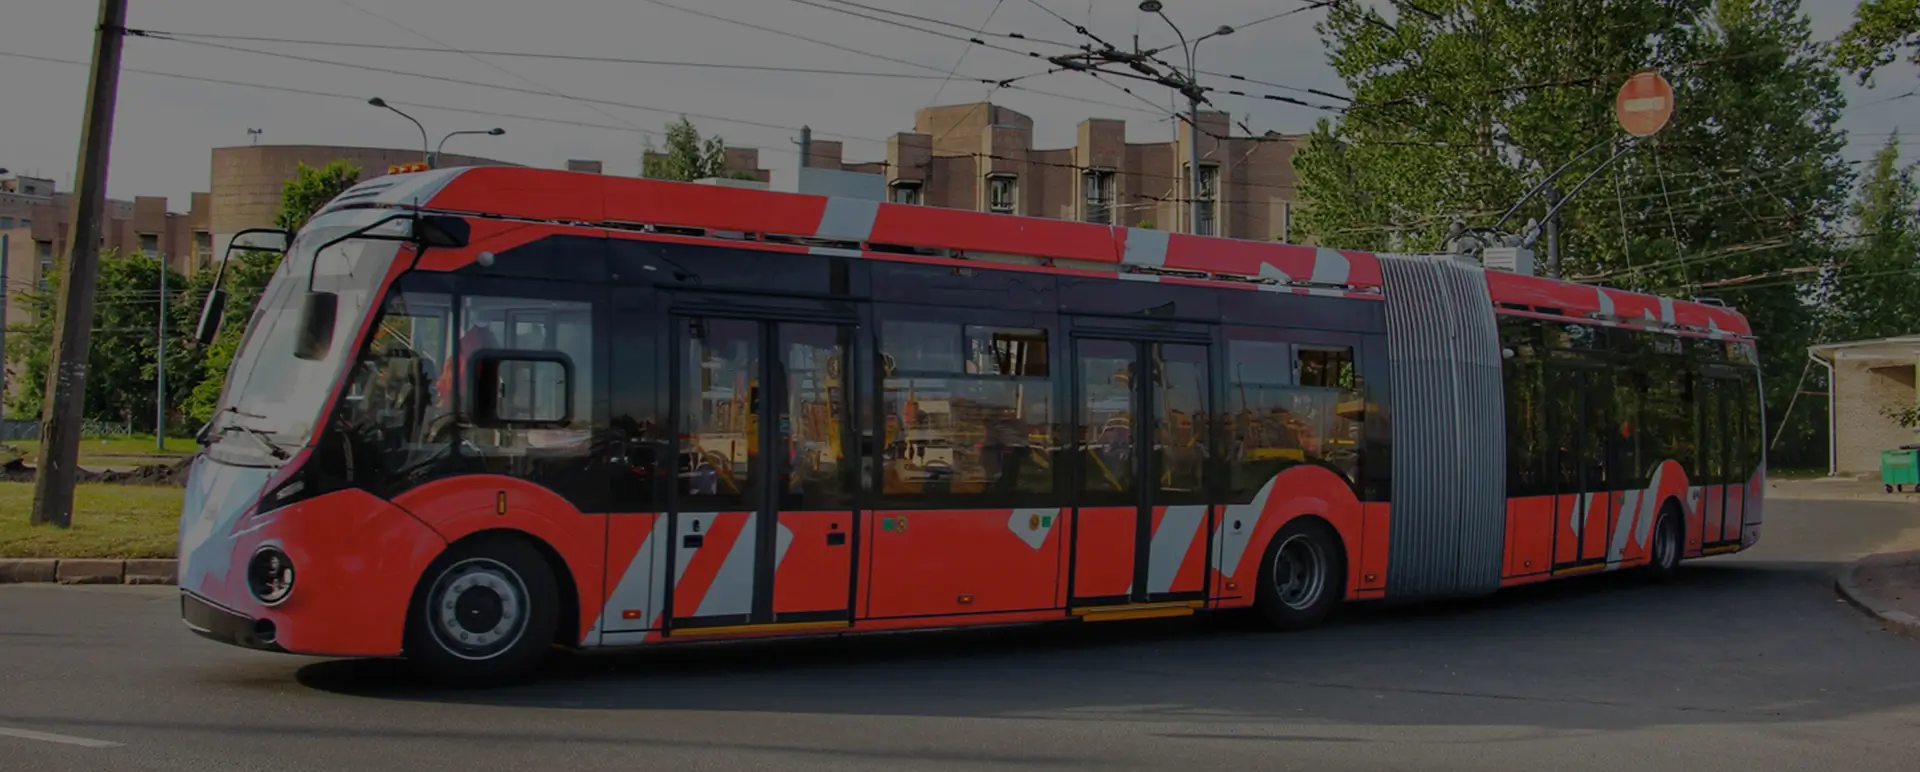 Транспортировка троллейбусов. Троллейбус nhjkf. Как перевозят троллейбус из города в город. Сколько стоит трале троллейбус.